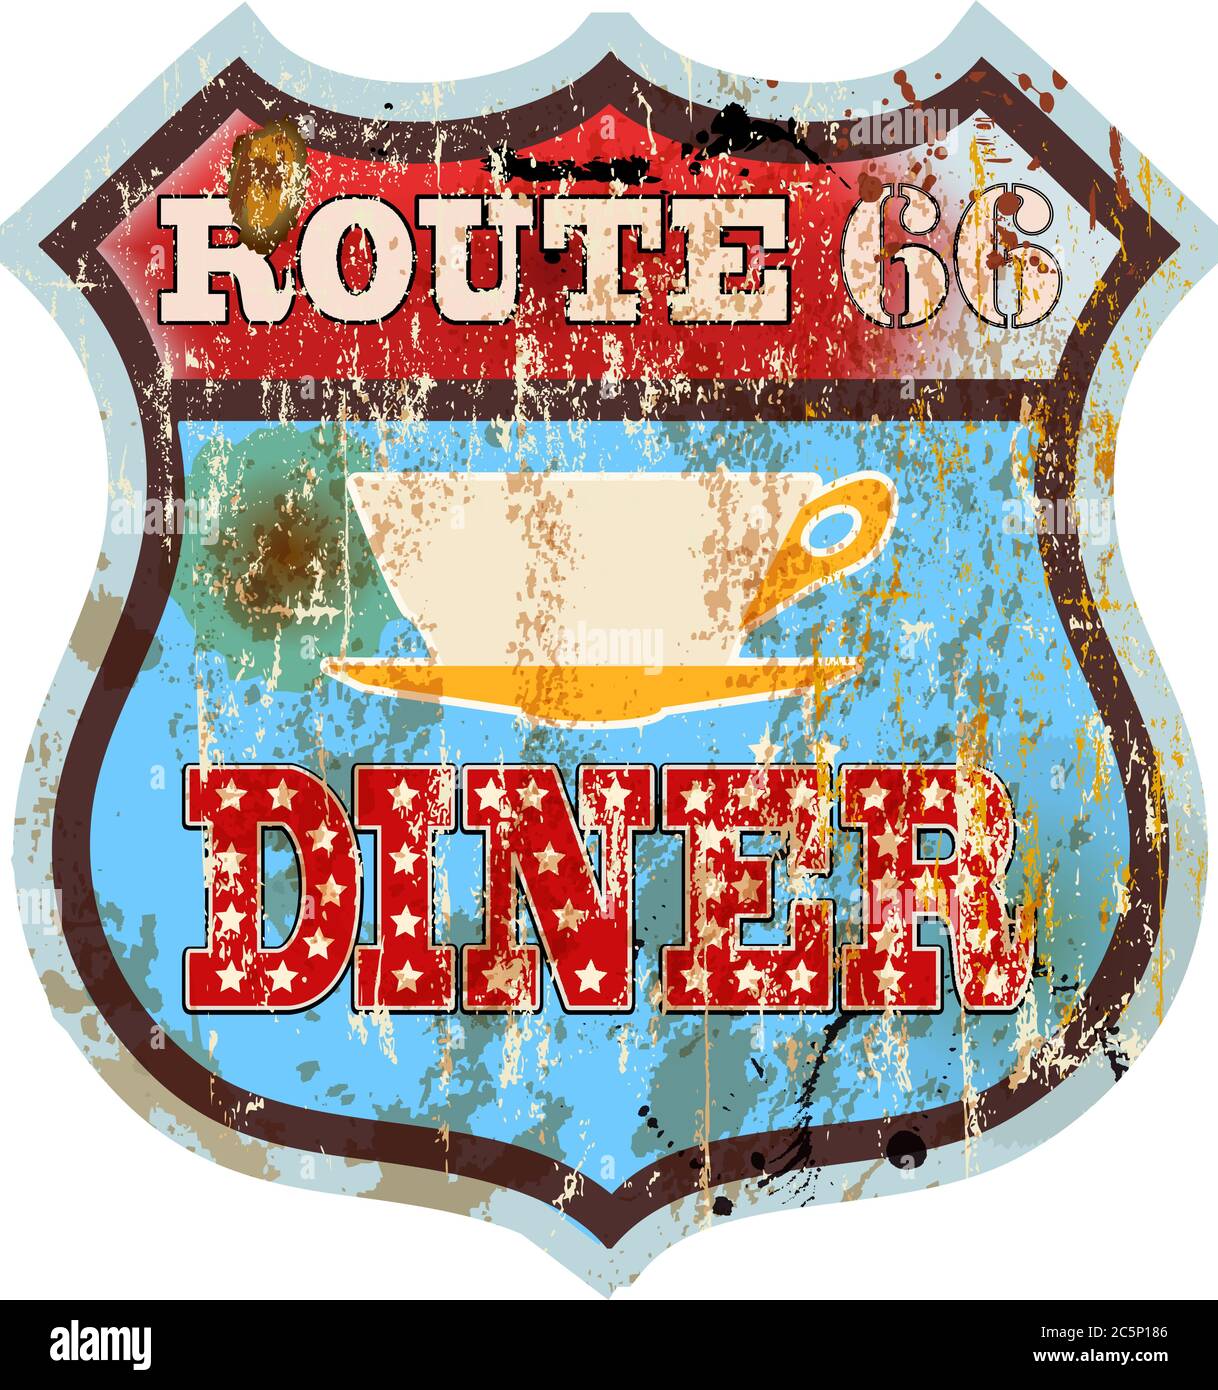 Vintage Route 66 Diner Zeichen, alte Fast-Food-Restaurant Advertsing Zeichen, Vektor-Kunst Illustration, americana Stock Vektor